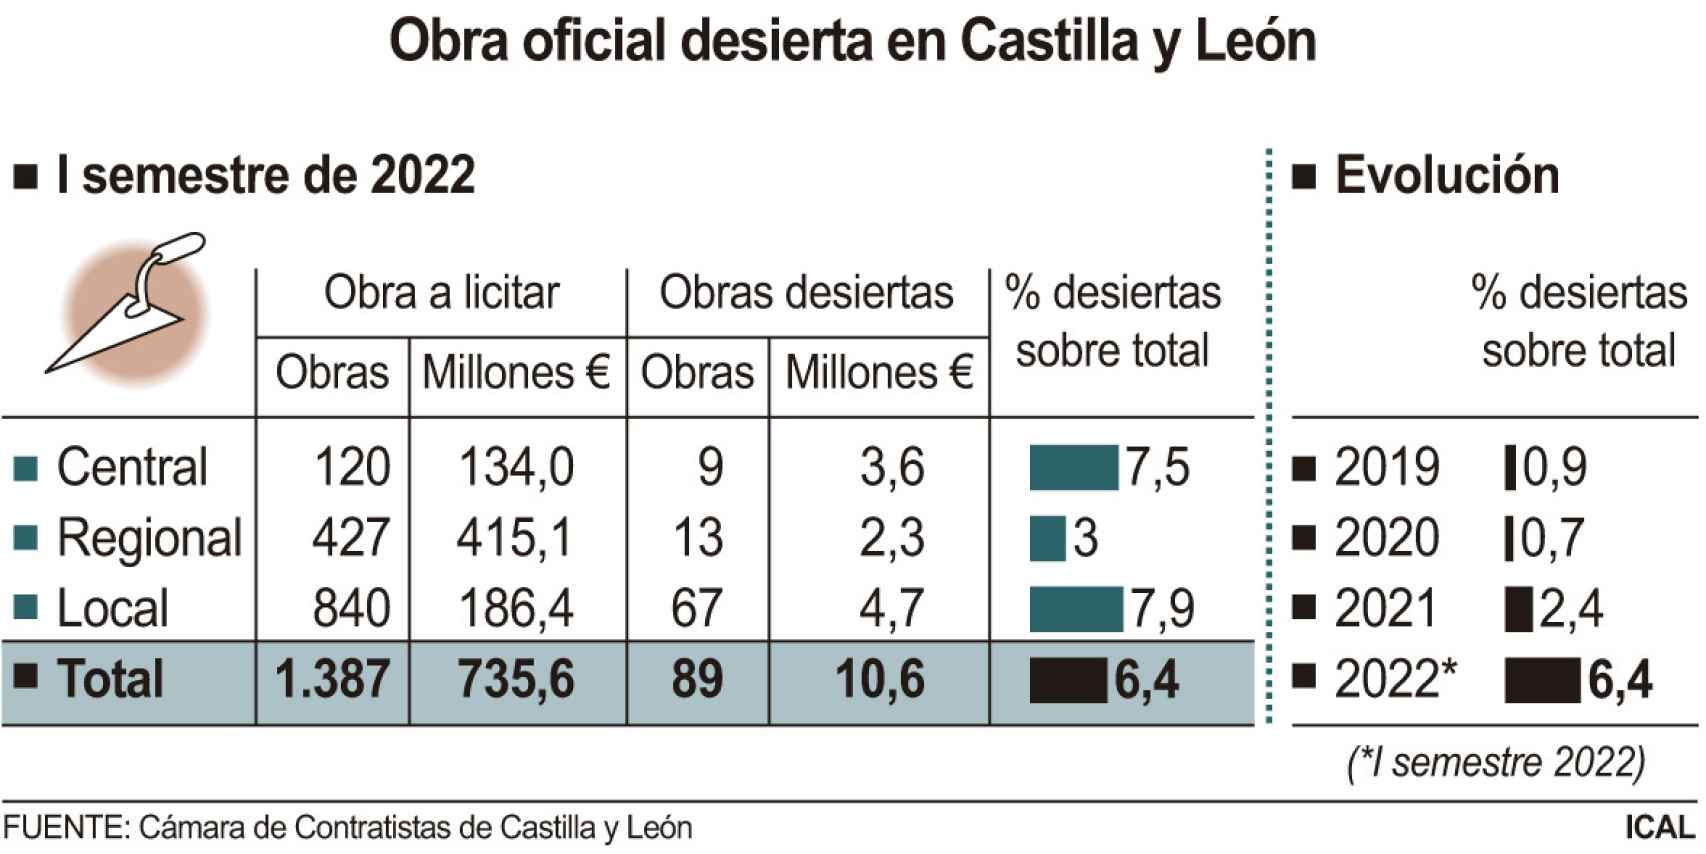 Obra oficial desierta en Castilla y León